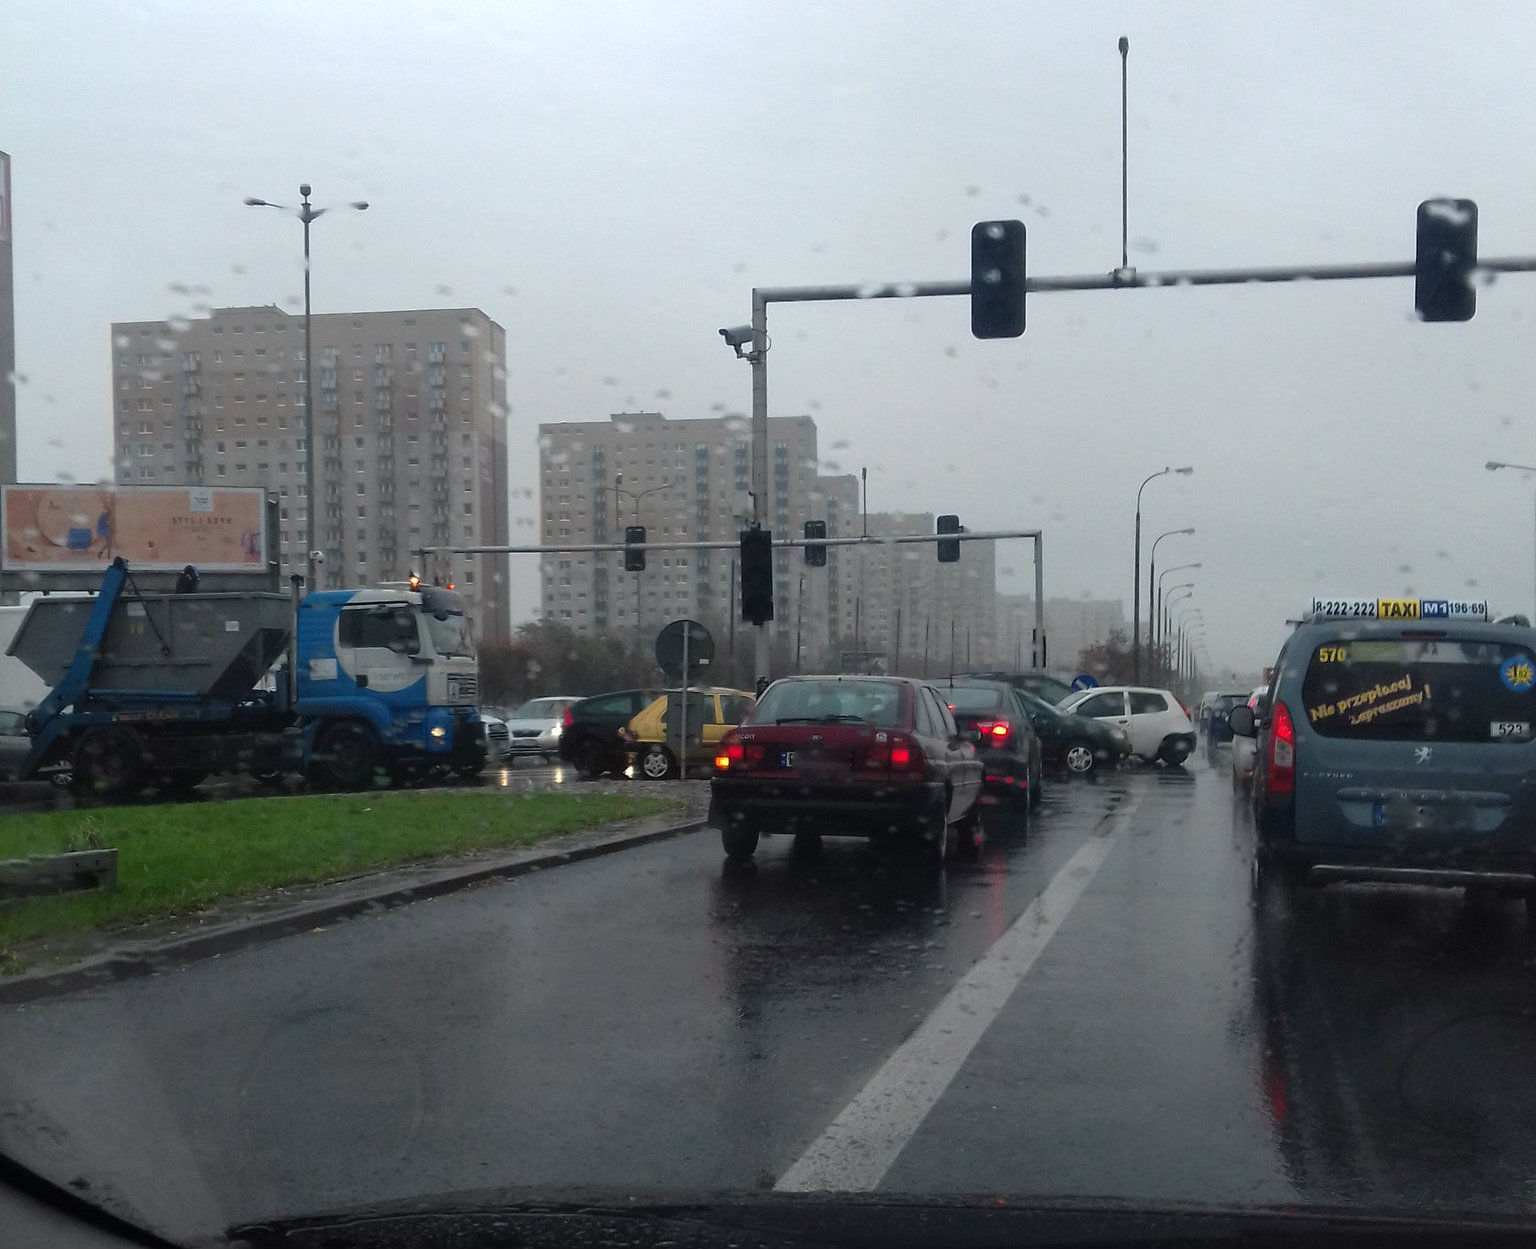 Kolejne zderzenie pojazdów przy ul. Księcia Mieszka I. Nadal nie działa sygnalizacja świetlna